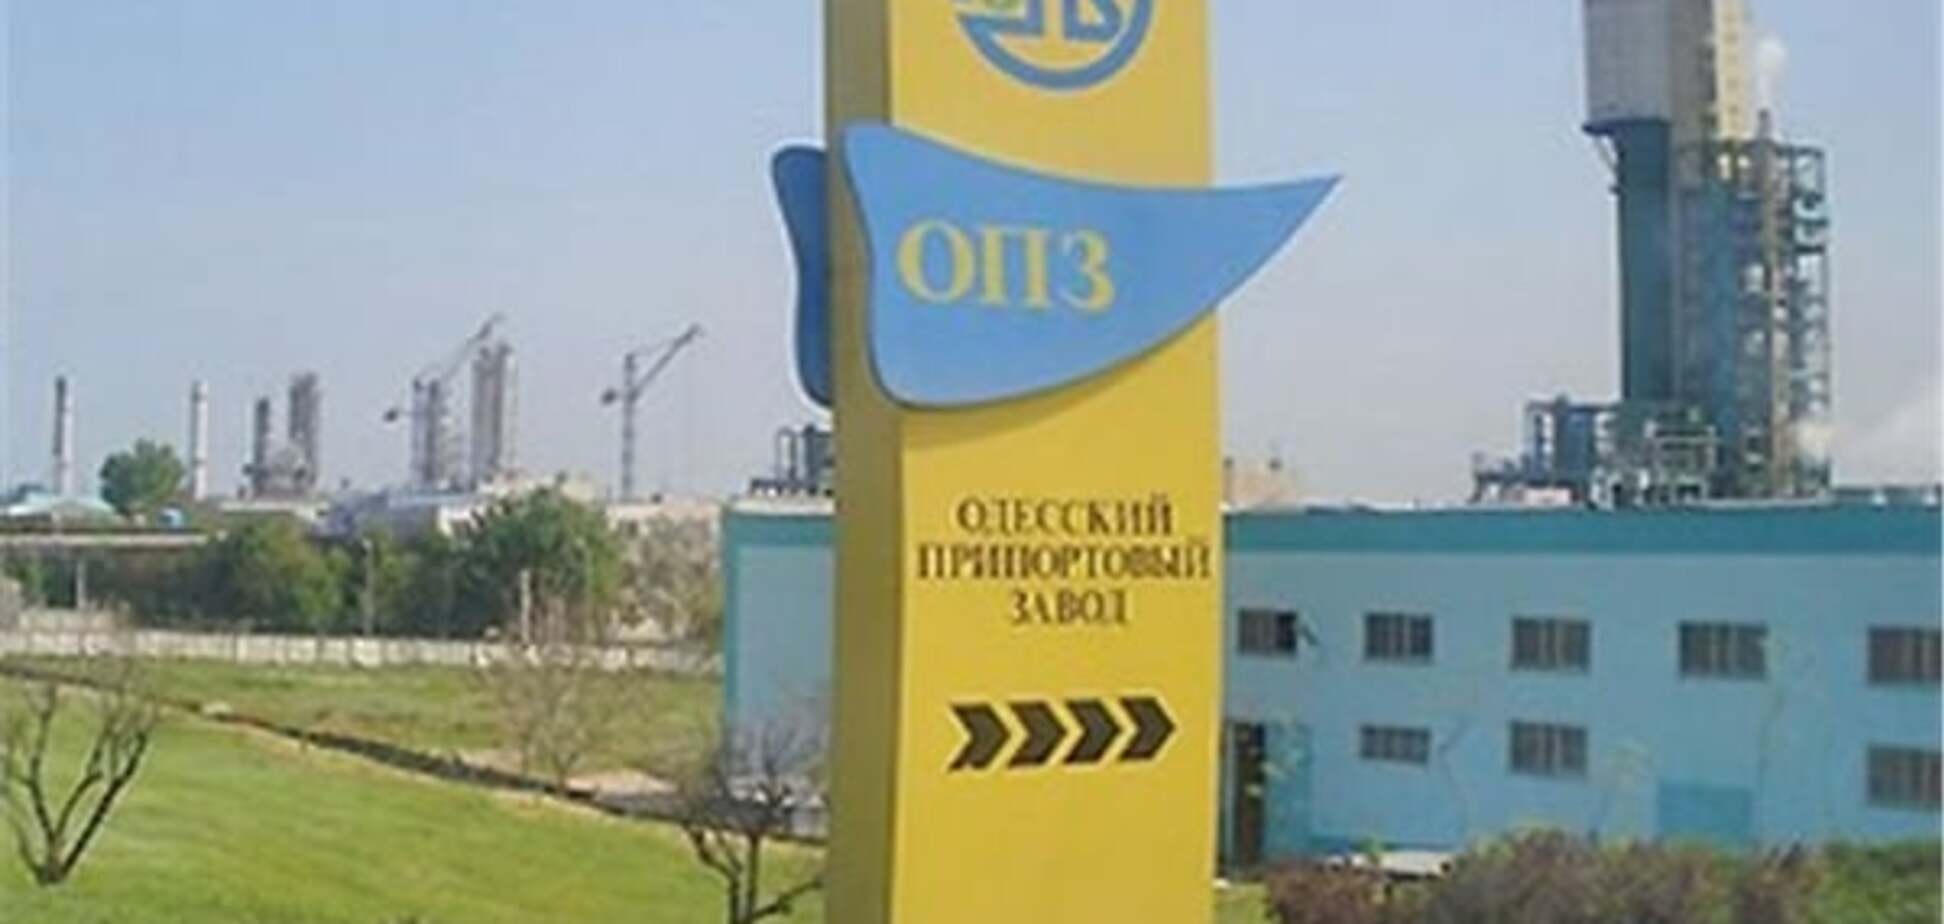 В Минэкономразвития рассчитывают значительно пополнить бюджет за счет Одесского припортового завода